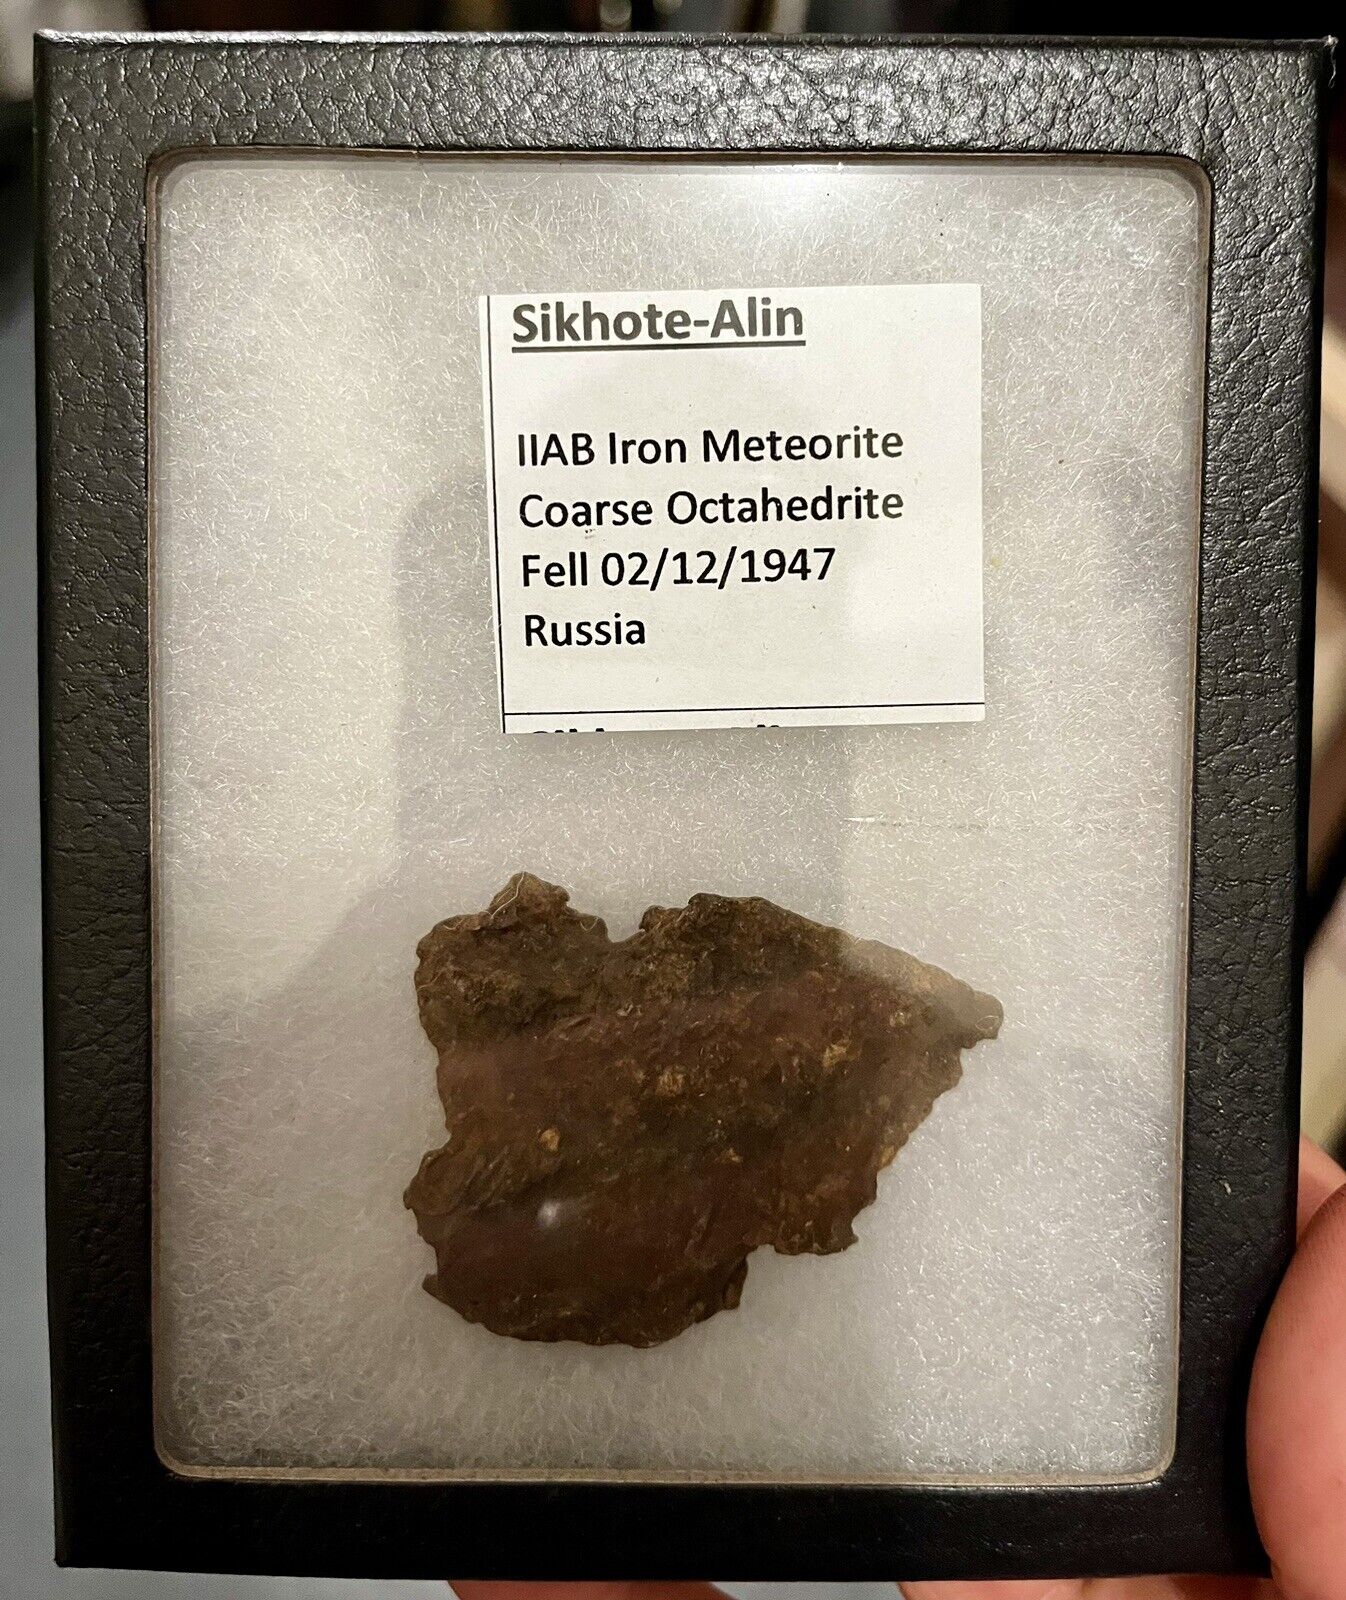 Sikhote Alin Iron Meteorite 11AB octahedrite 96 grams